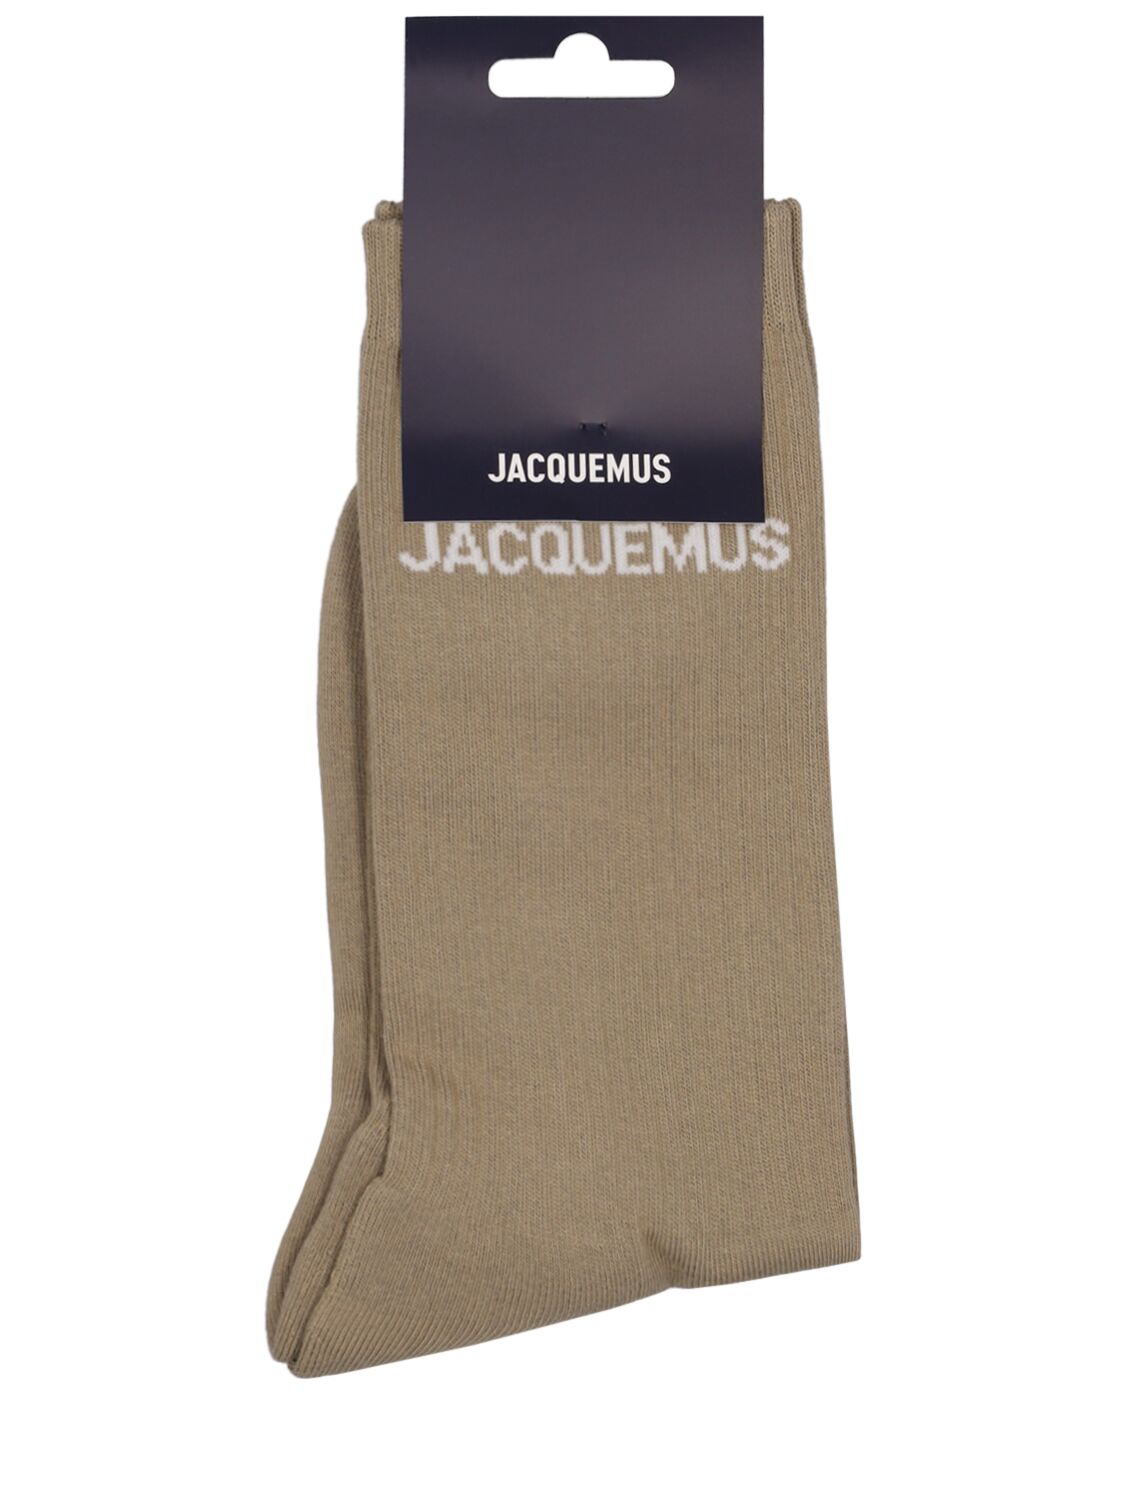 Jacquemus Les Chaussettes Cotton Blend Socks In Light Khaki